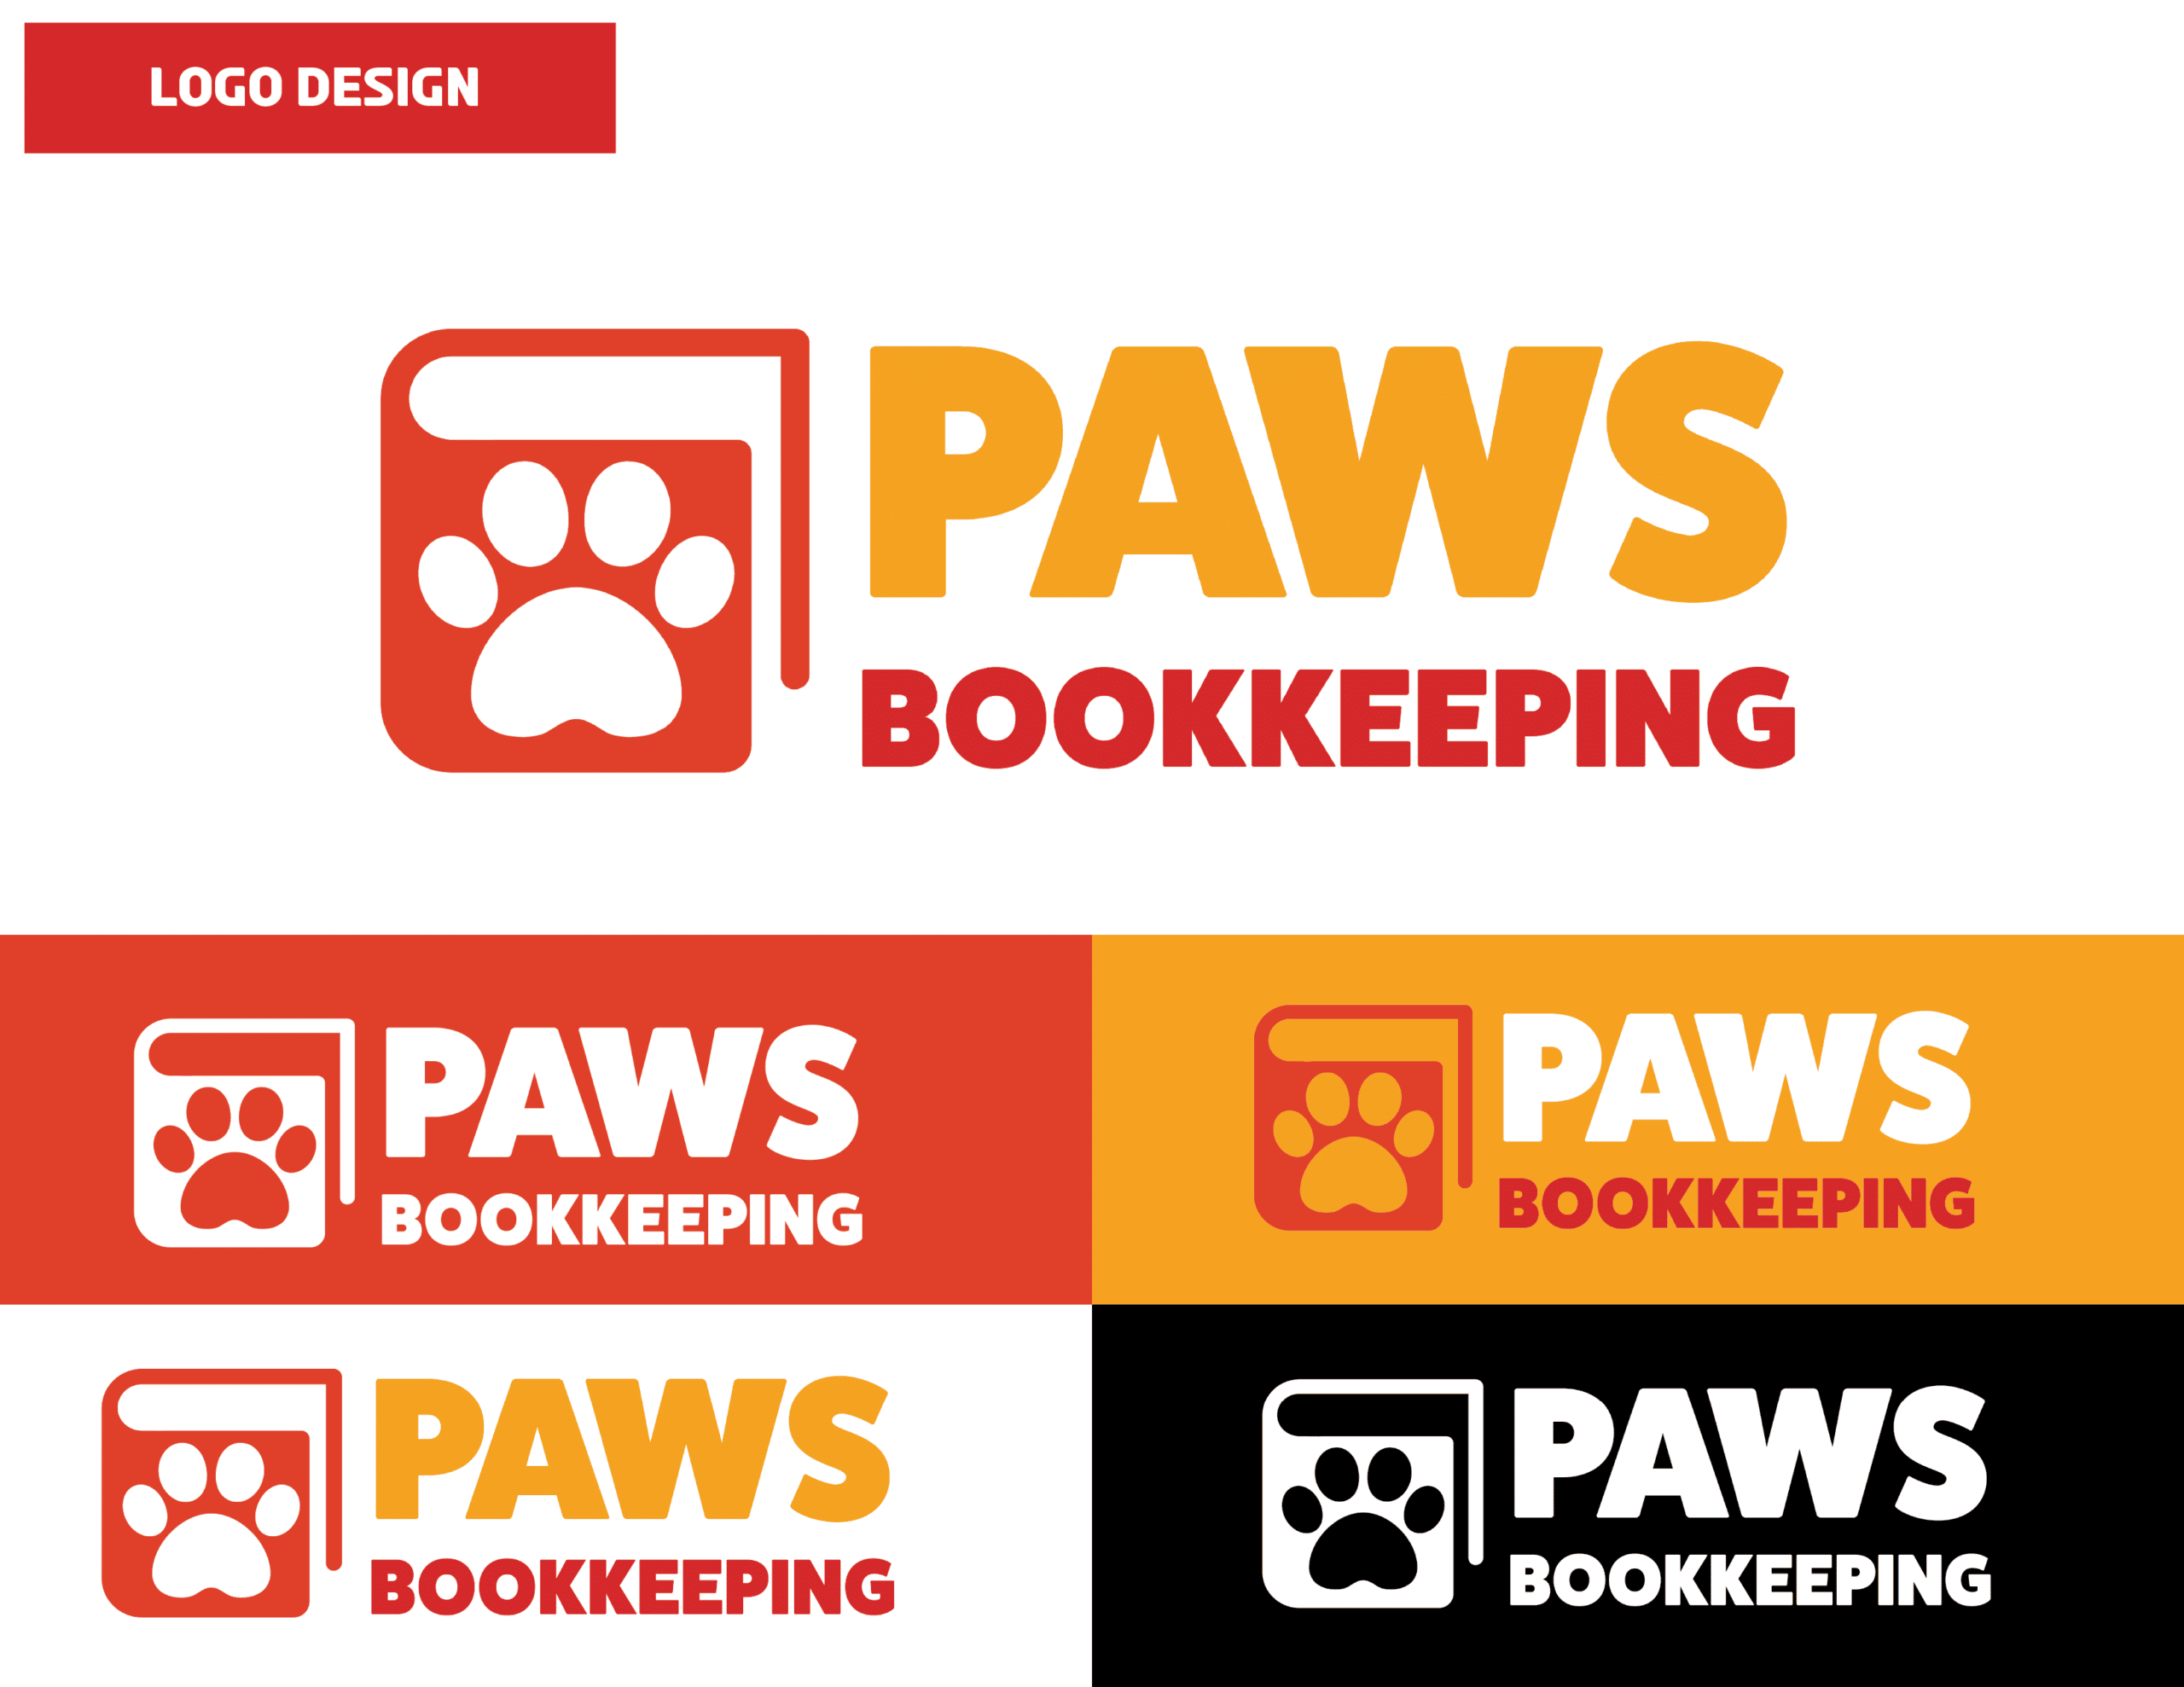 01_PawsBookkeeping_Logo Design